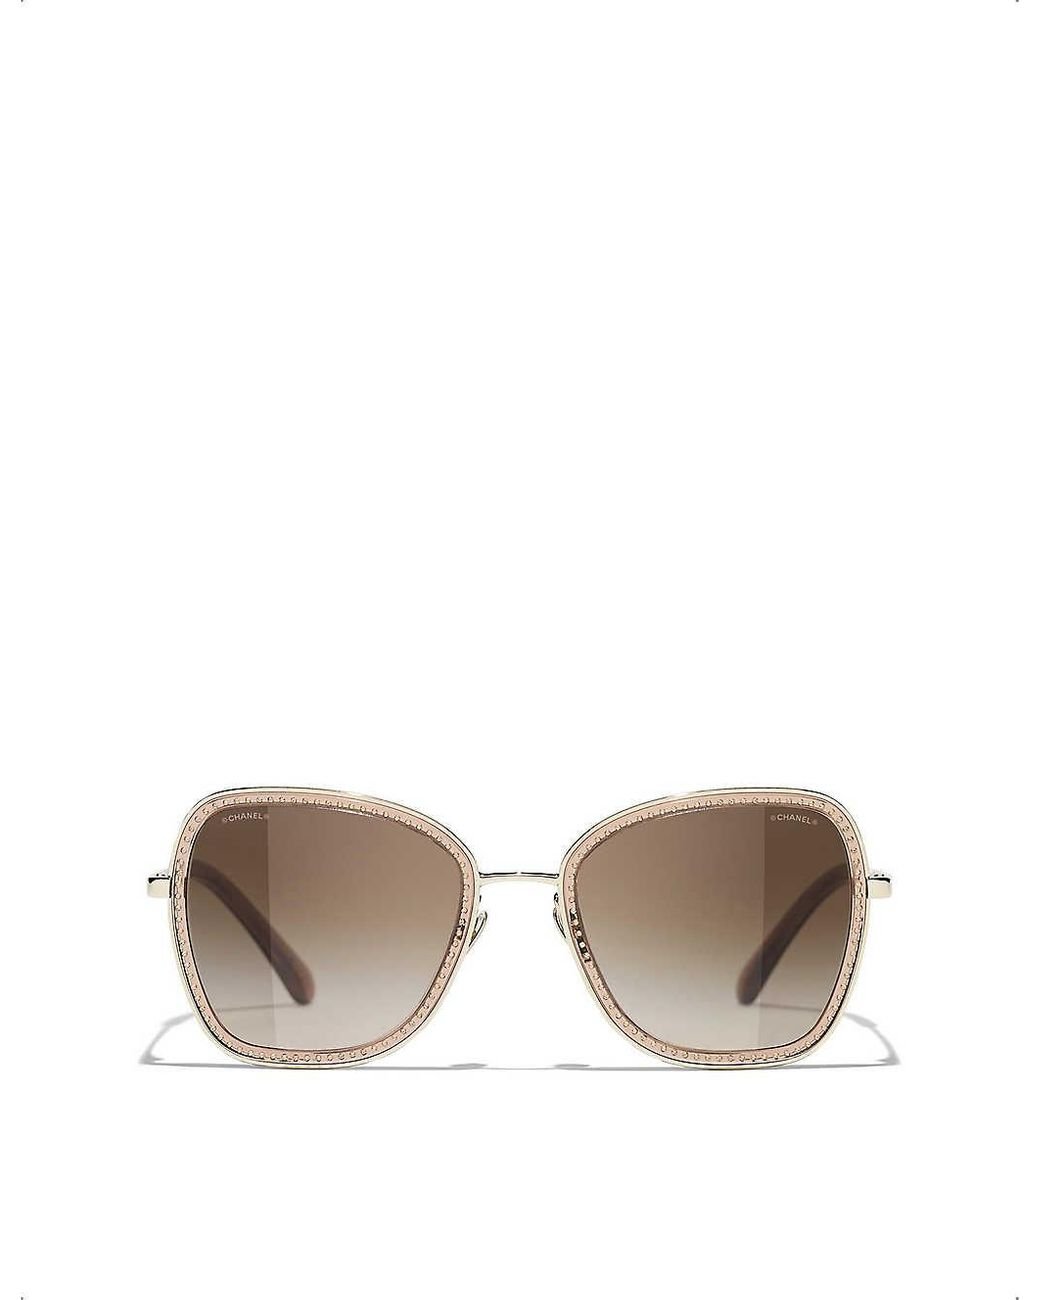 Chanel Square Sunglasses in Metallic